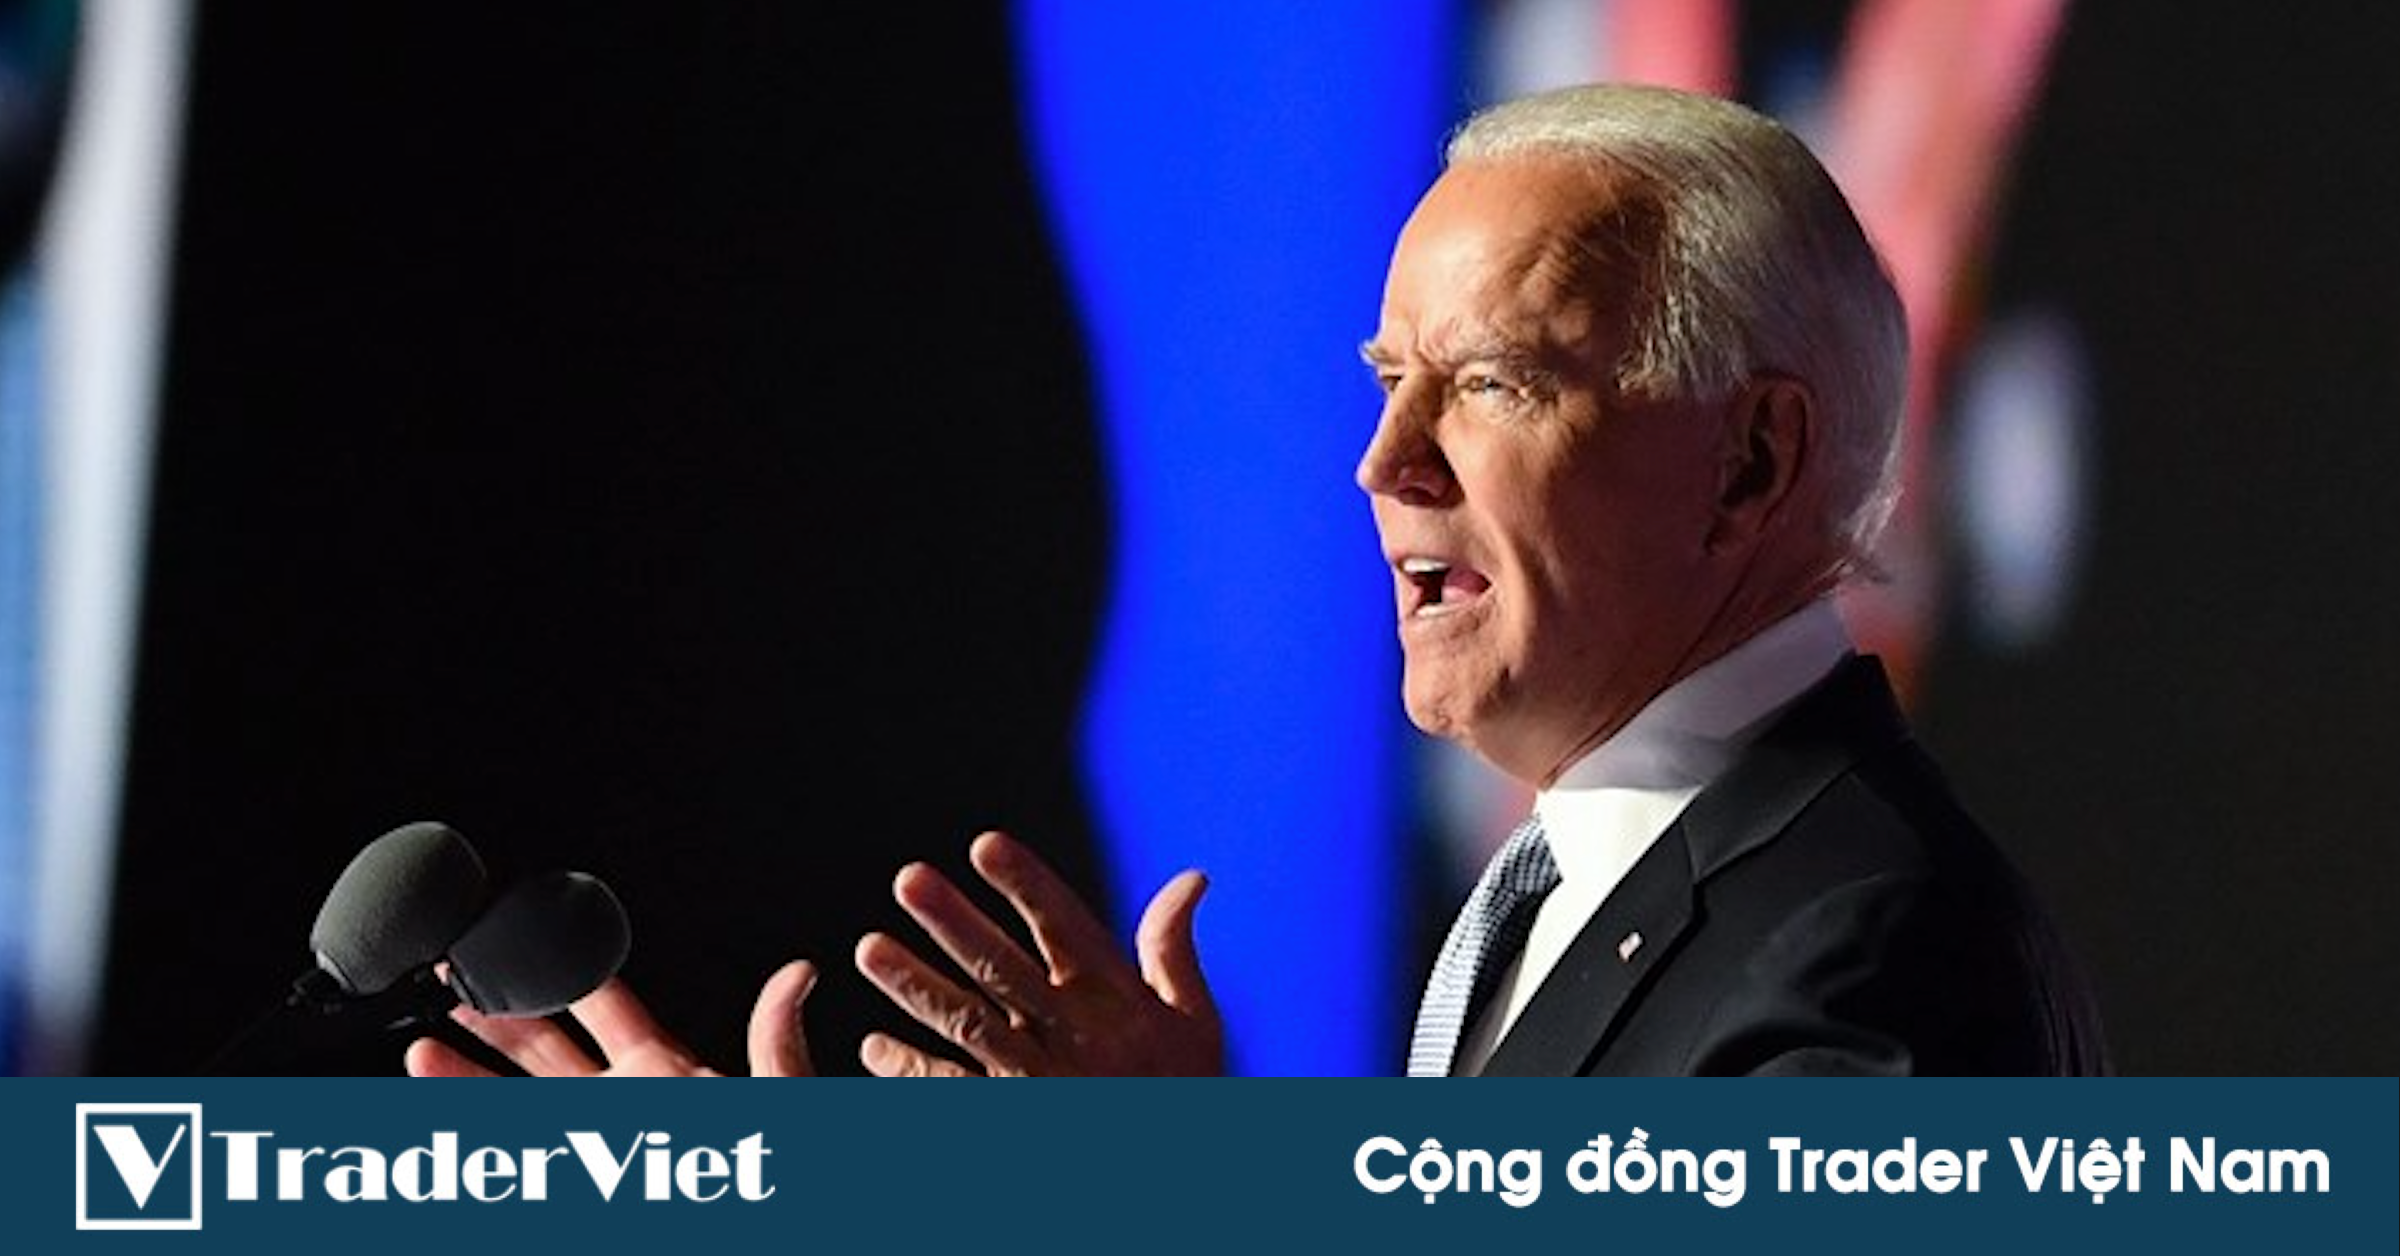 Các trader huyền thoại nói gì về Tân tổng thống Joe Biden?